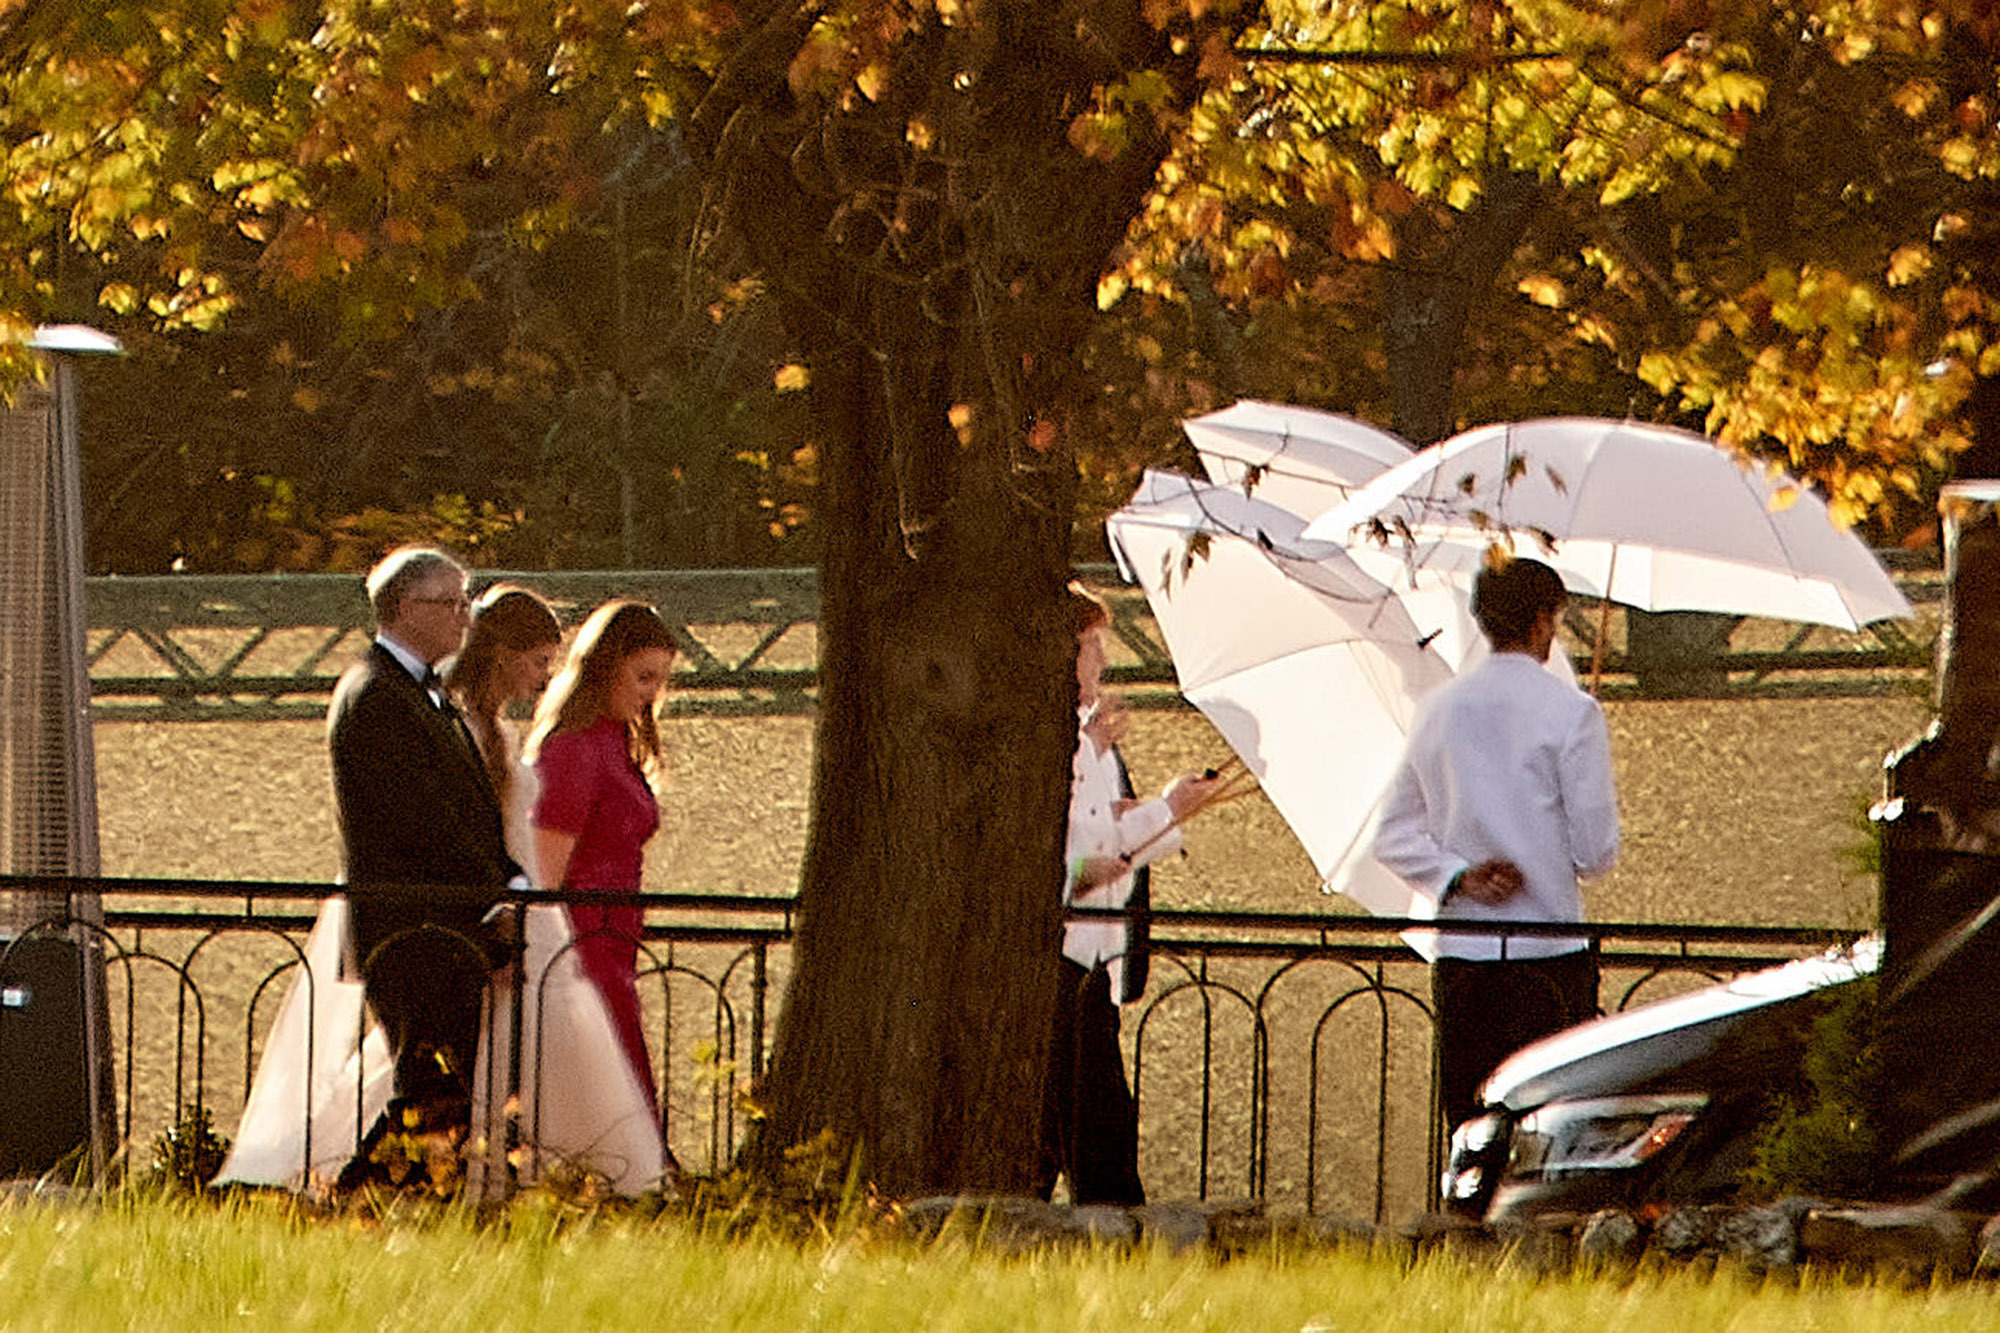 Trong suốt nhiều ngày trước lễ cưới của con gái cưng, tỷ phú Bill Gates và vợ cũng đã cùng nhua tiếp đóm bạn bè, người thân. Cùng nhau đi dạo với cô con gái và đứng nhìn đôi tân hôn chụp ảnh cưới